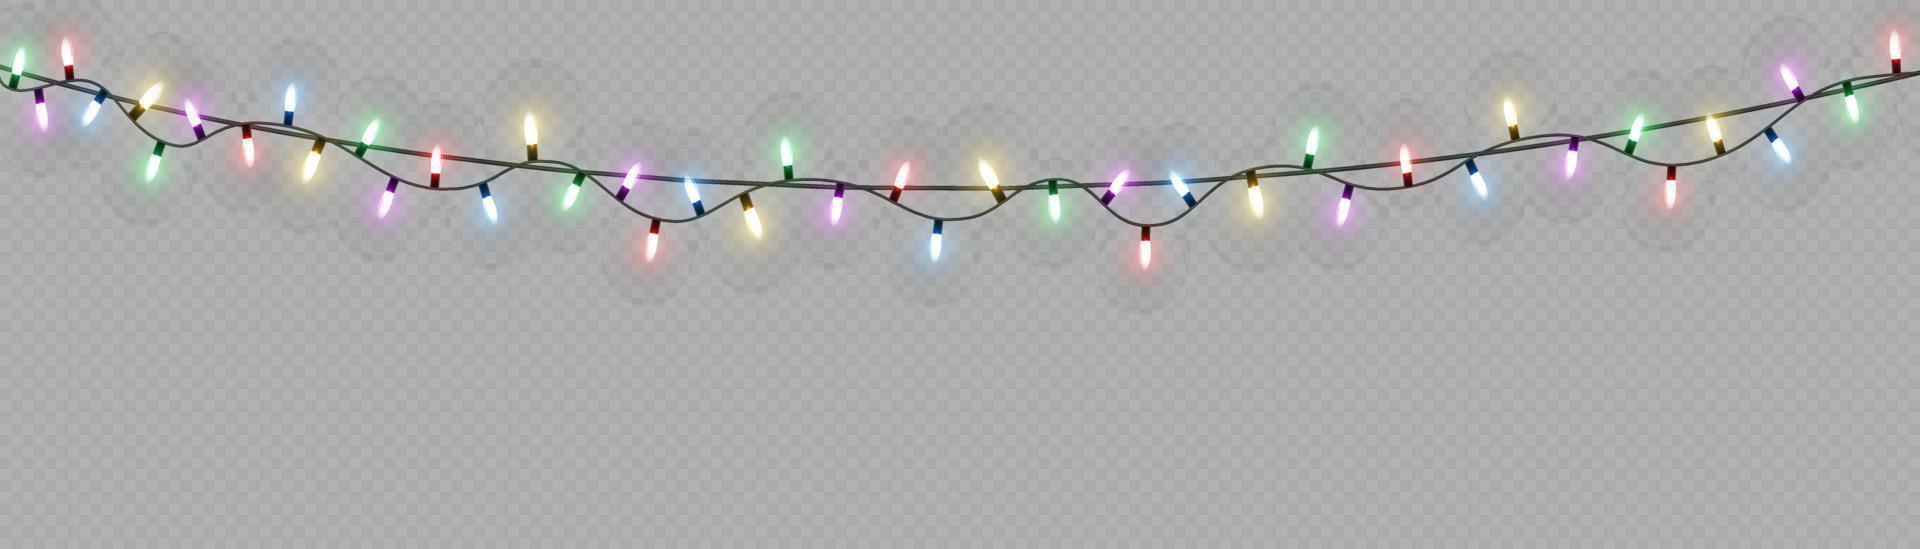 Kerstmis lichten. vector lijn met gloeiend licht lampen.set van gouden Kerstmis gloeiend slinger LED neon lamp illustratie. Kerstmis lichten geïsoleerd voor kaarten, spandoeken, posters